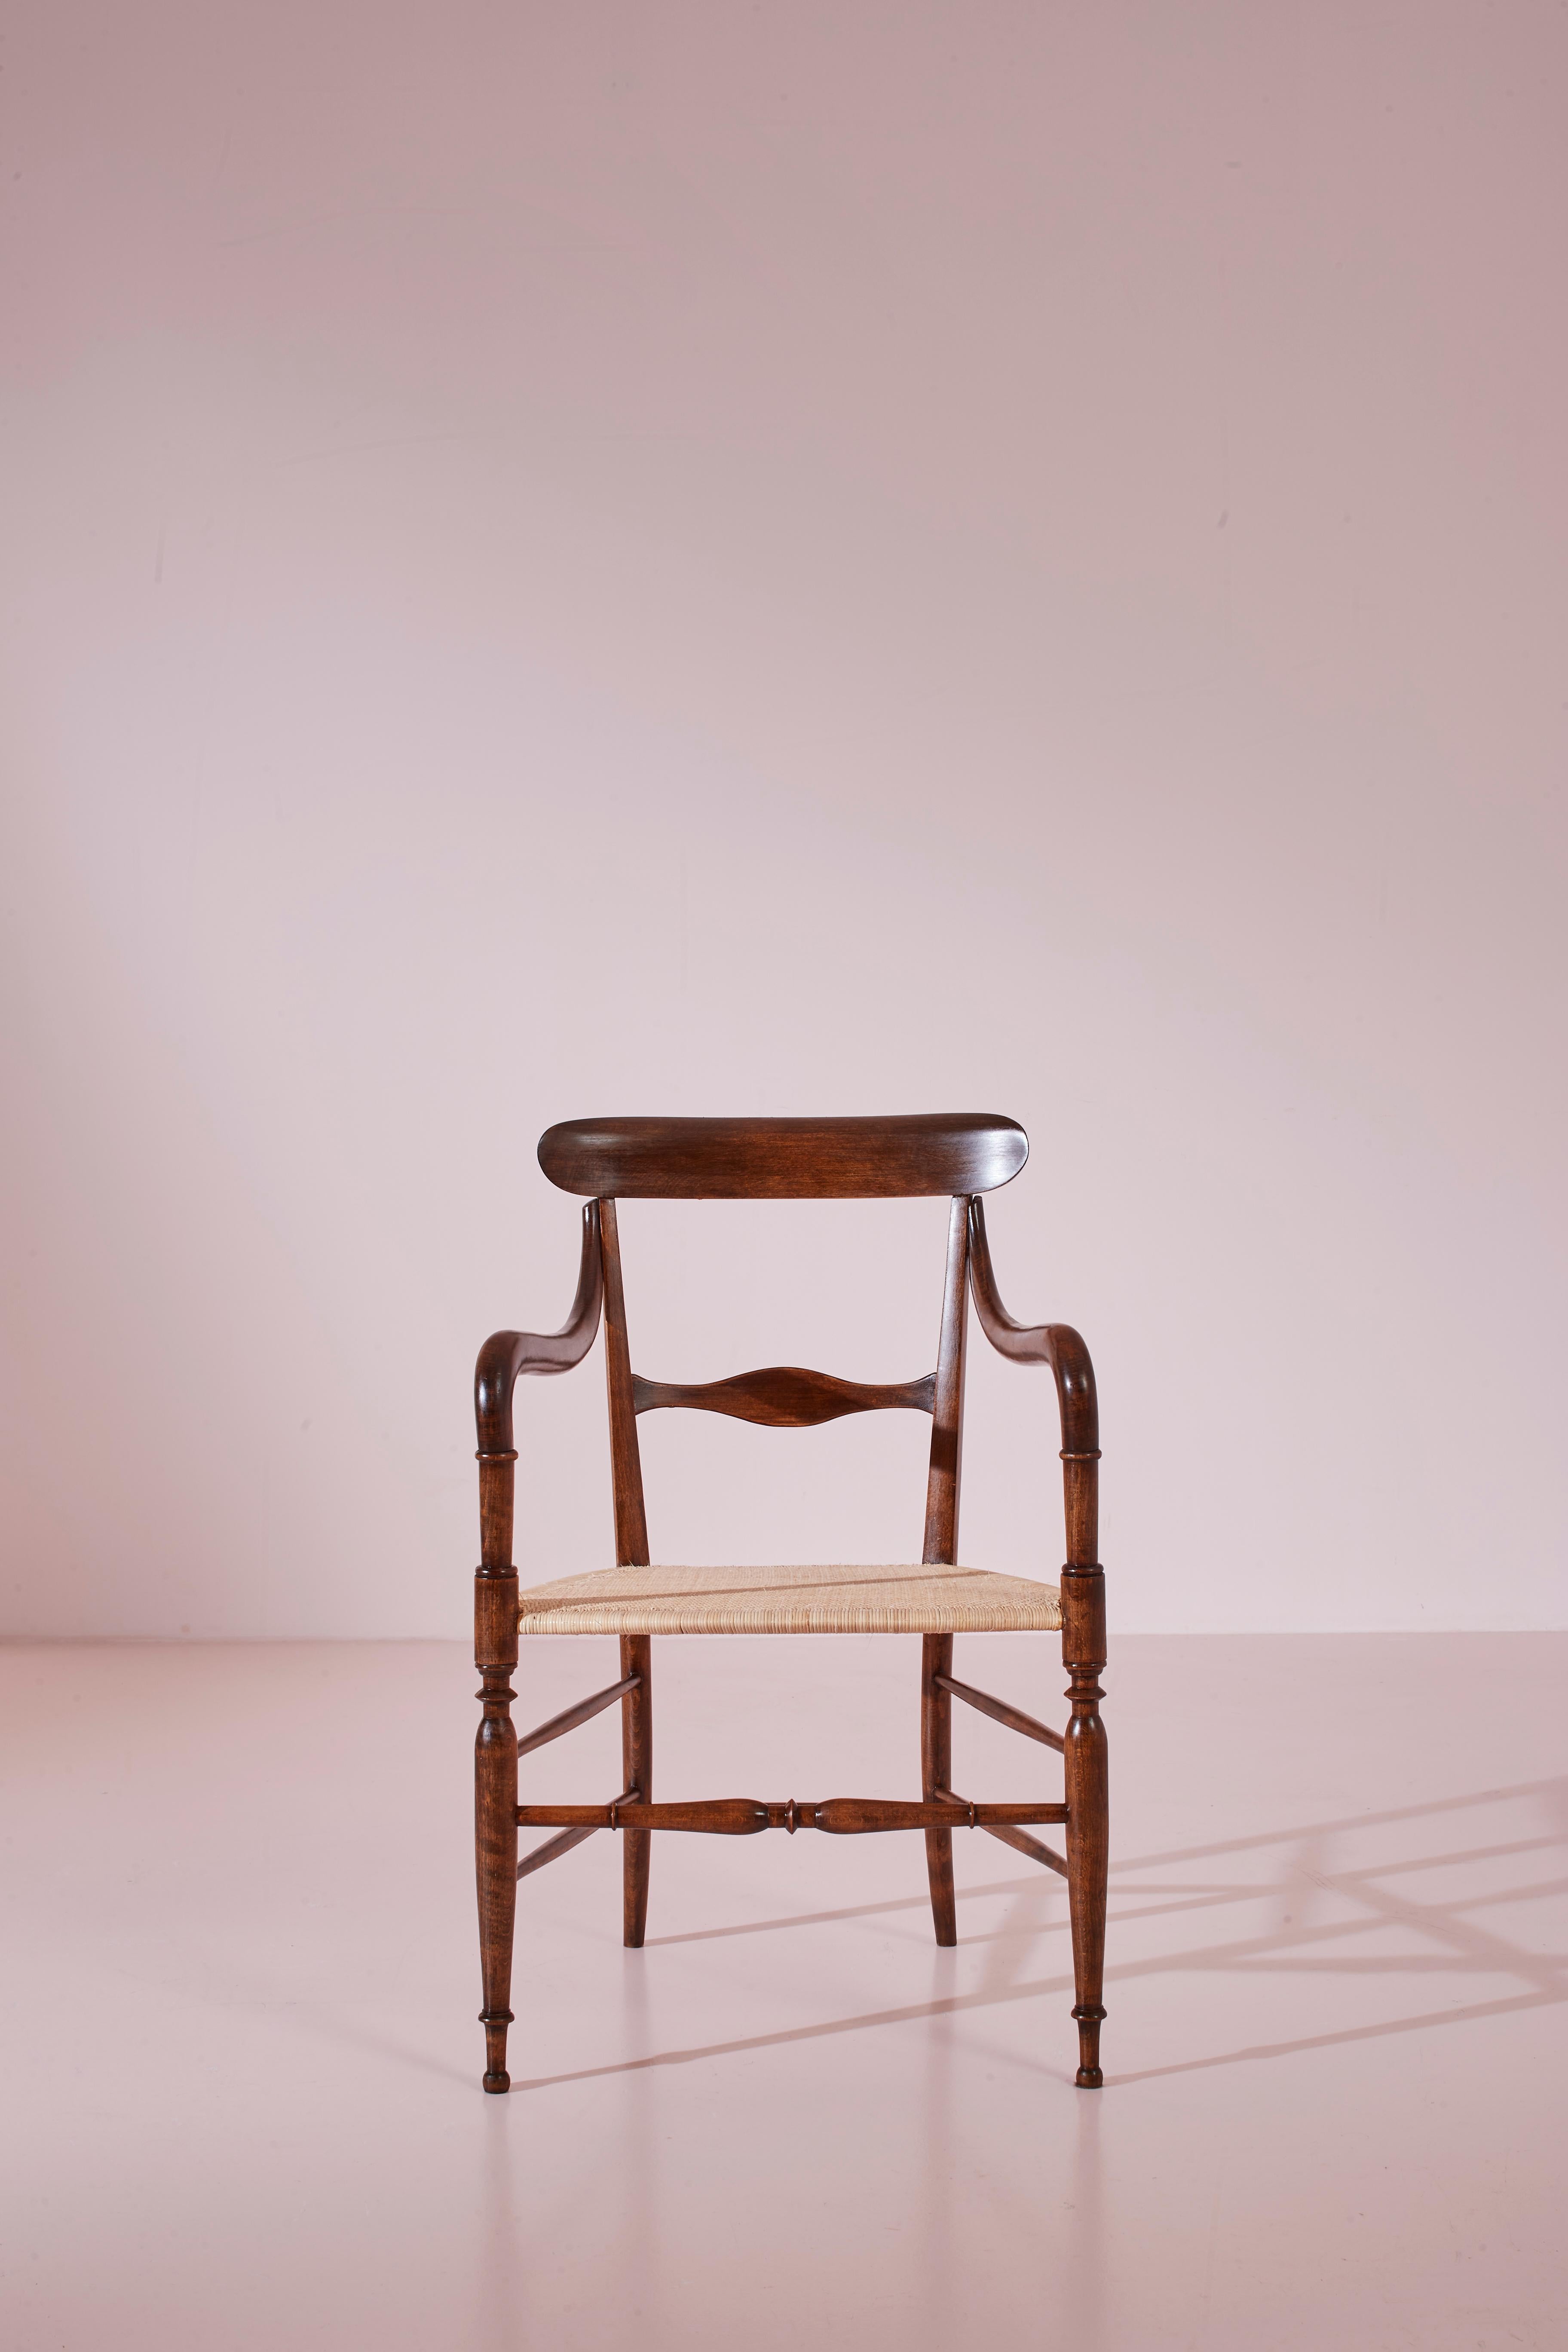 Modell Campanino-Sessel von Guido Chiappe, Buchenholz und Schilfrohr, Chiavari 1950er Jahre (Handgeknüpft) im Angebot